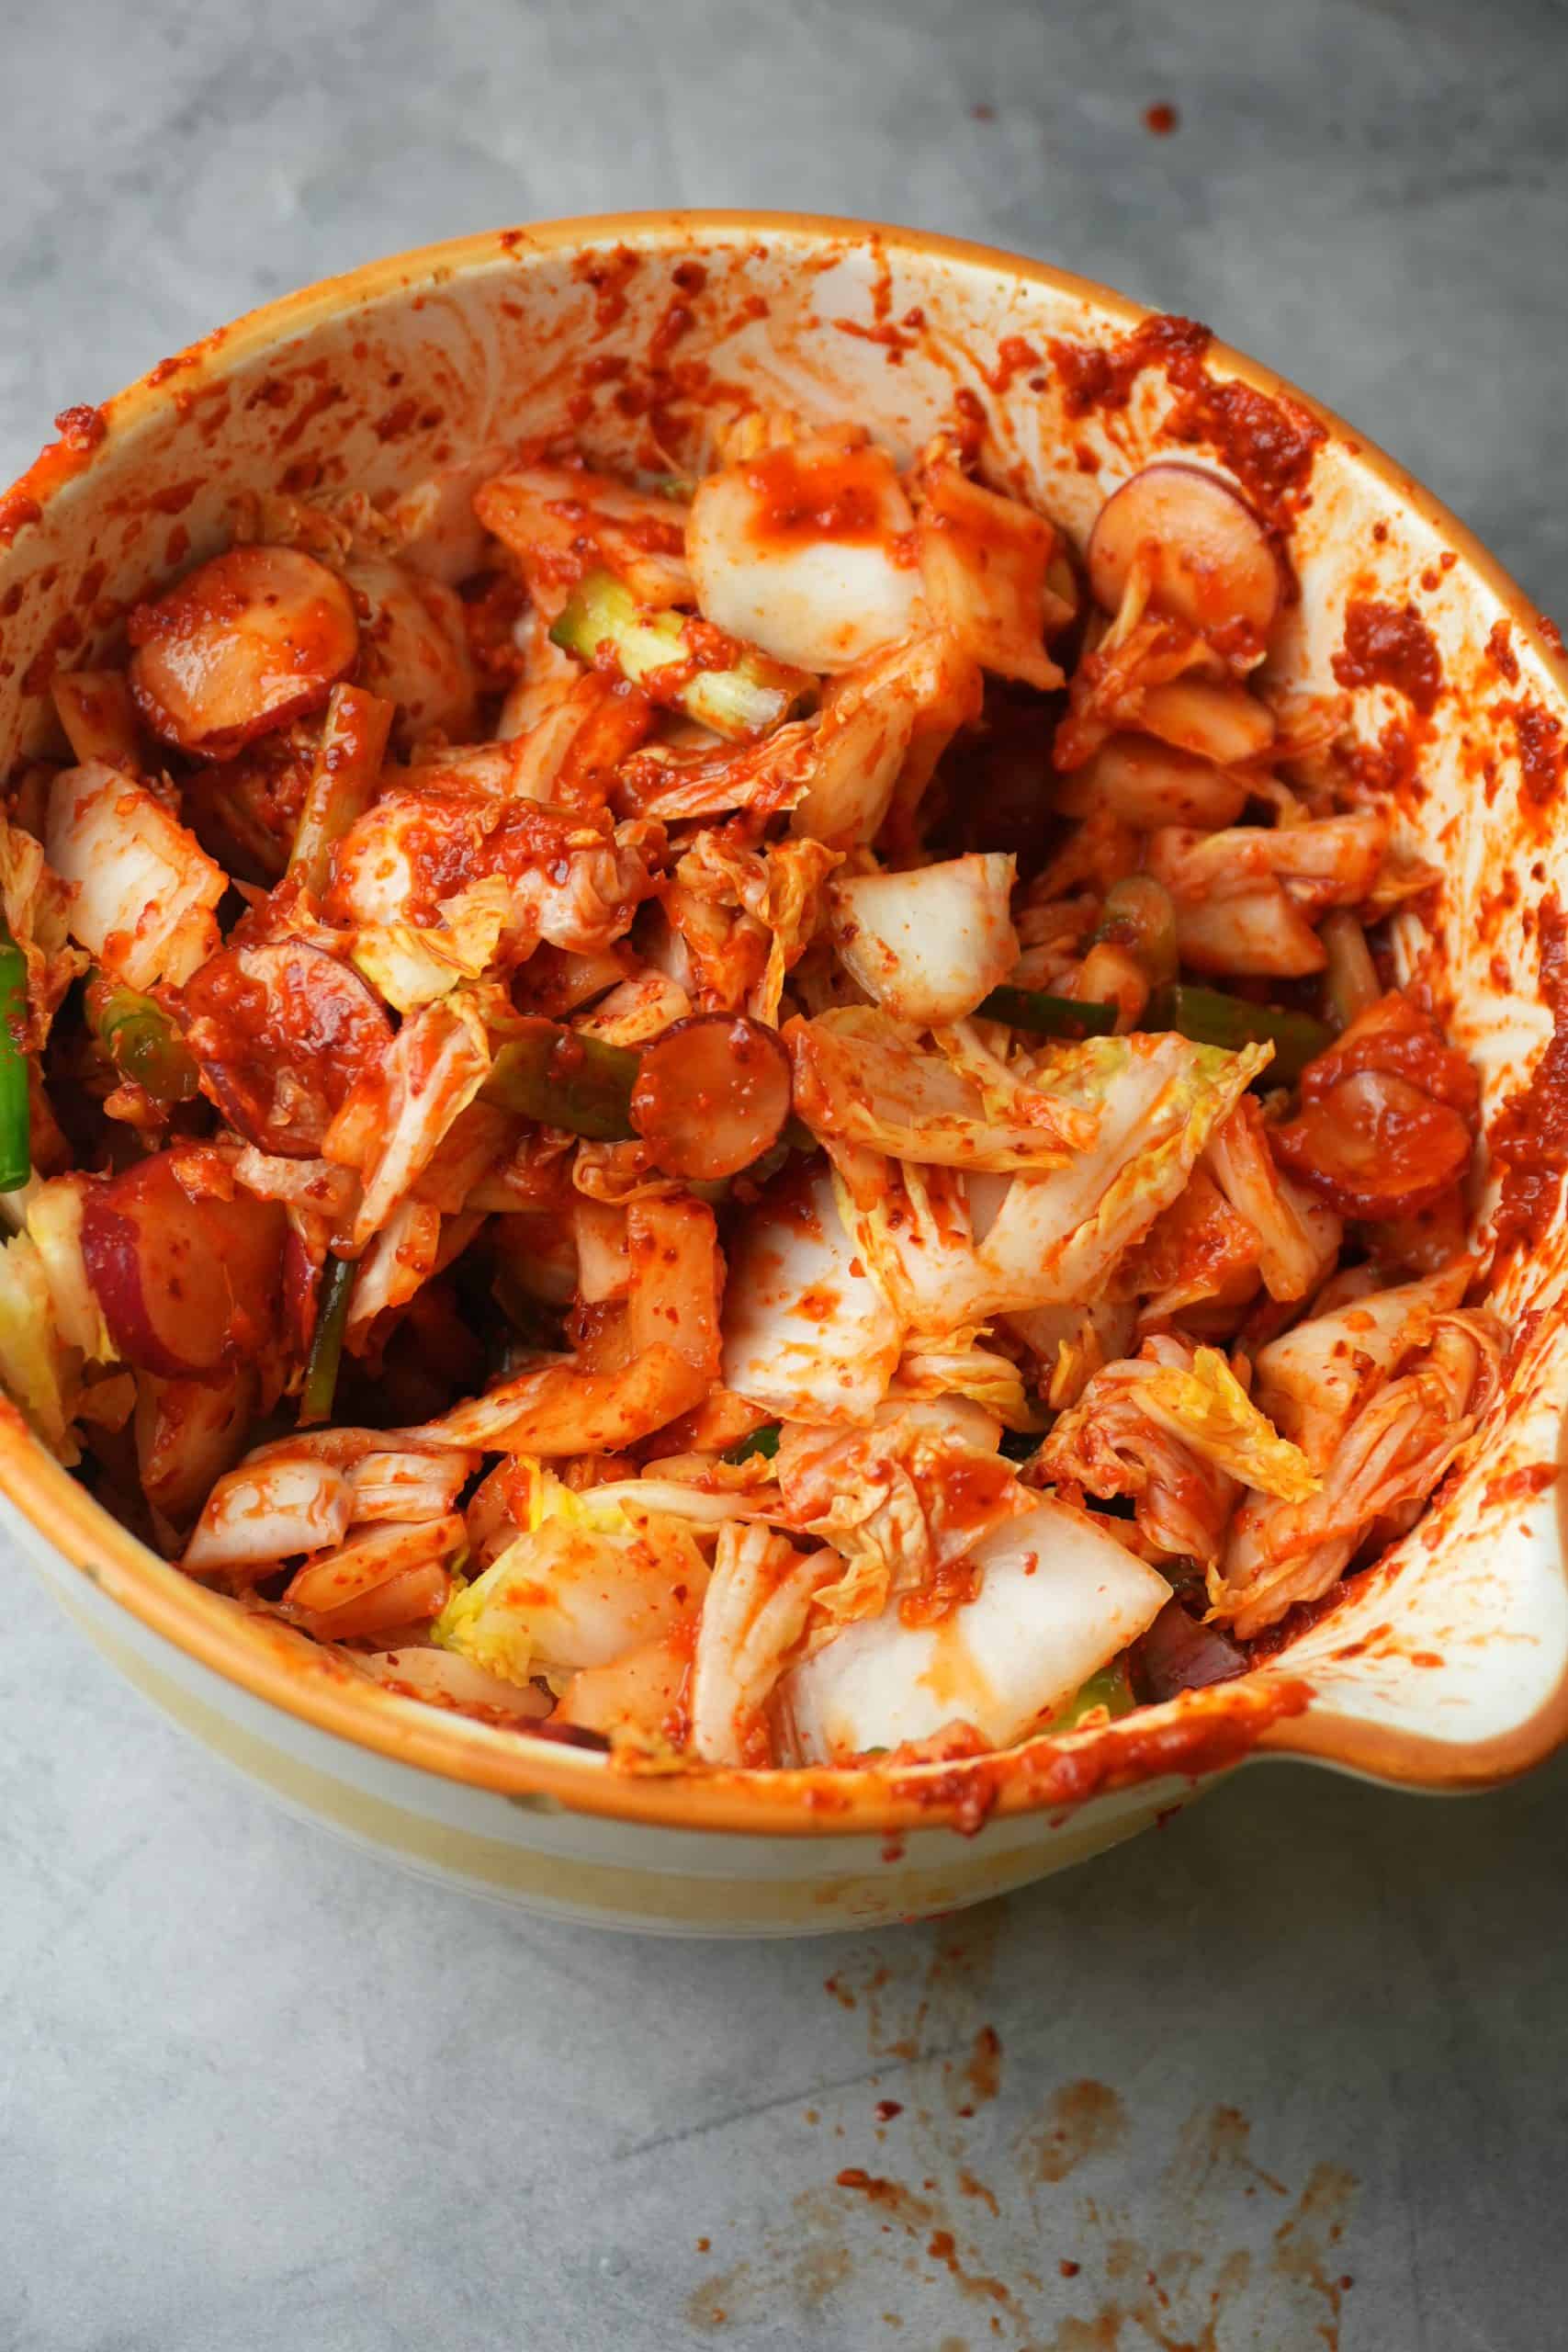 Mixed kimchi ina colorful bowl awaiting fermentation